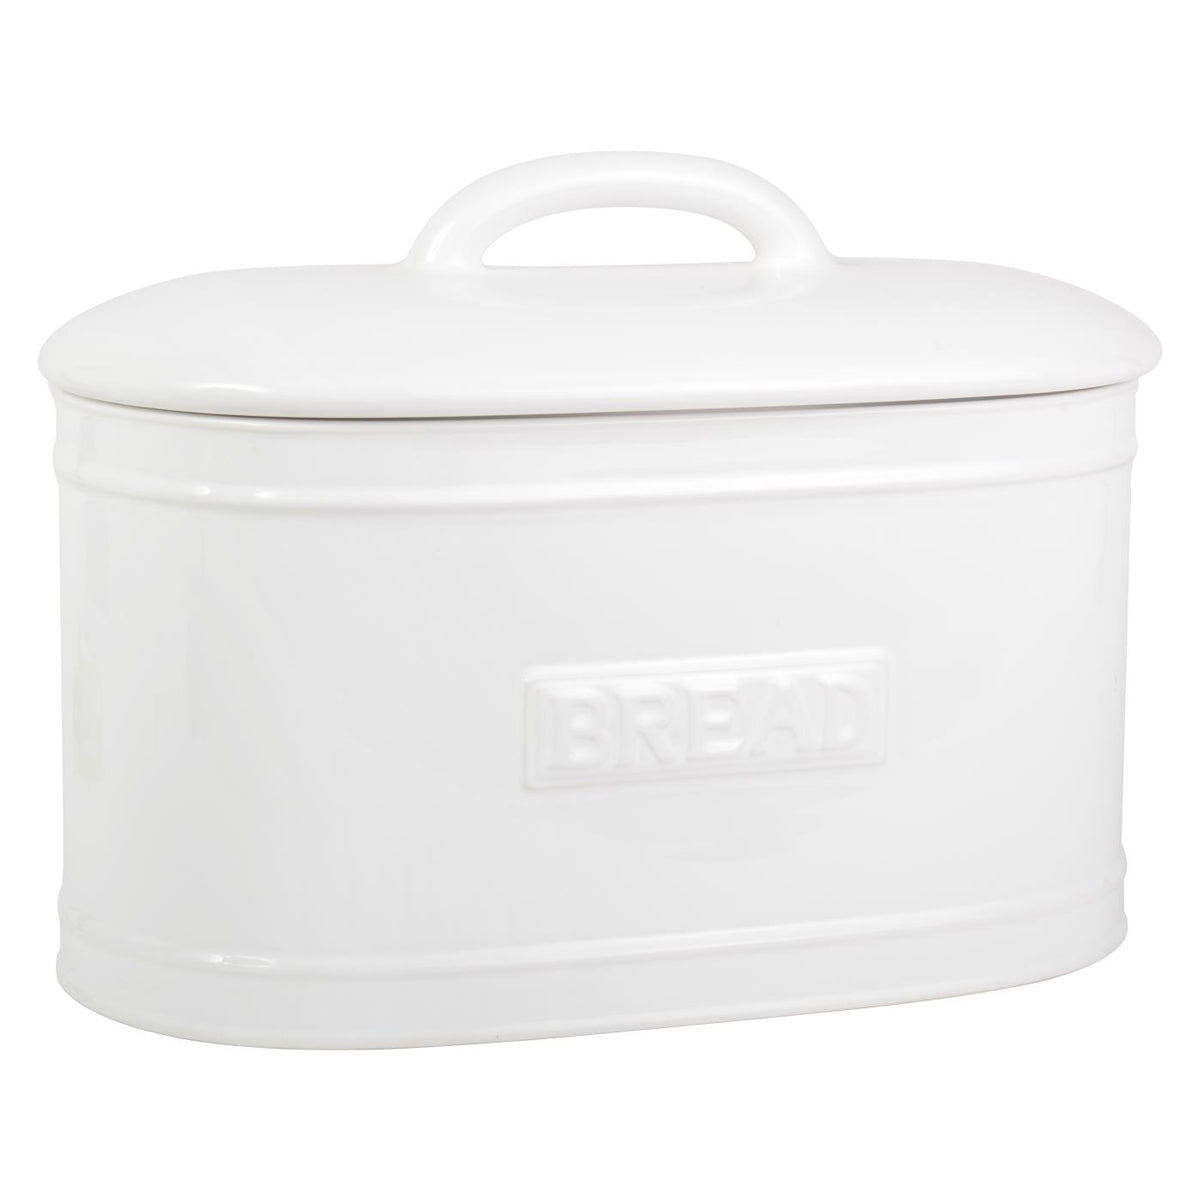 Bread Box Oval White